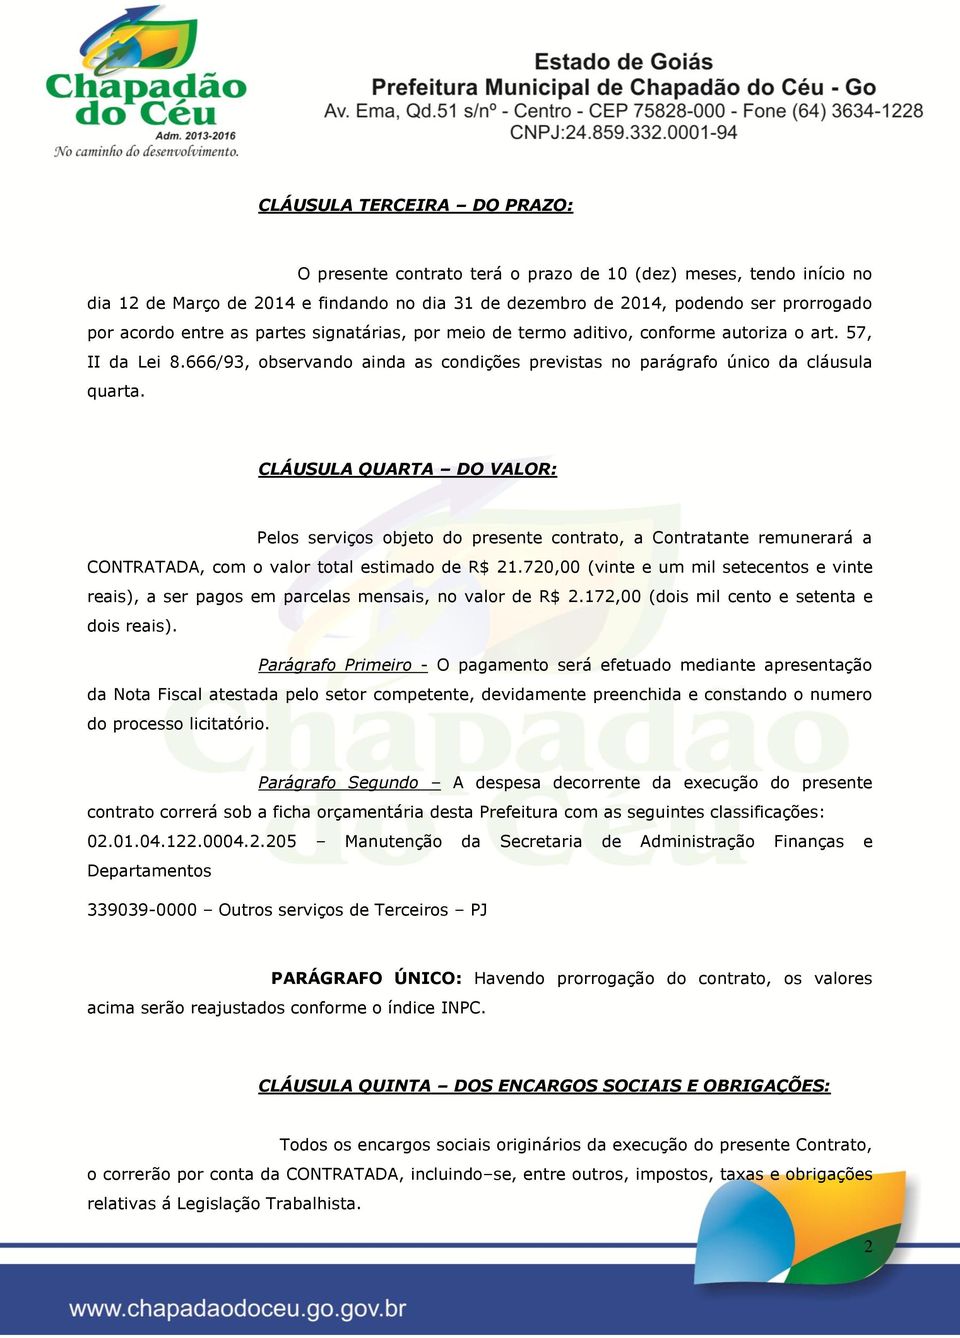 CLÁUSULA QUARTA DO VALOR: Pelos serviços objeto do presente contrato, a Contratante remunerará a CONTRATADA, com o valor total estimado de R$ 21.